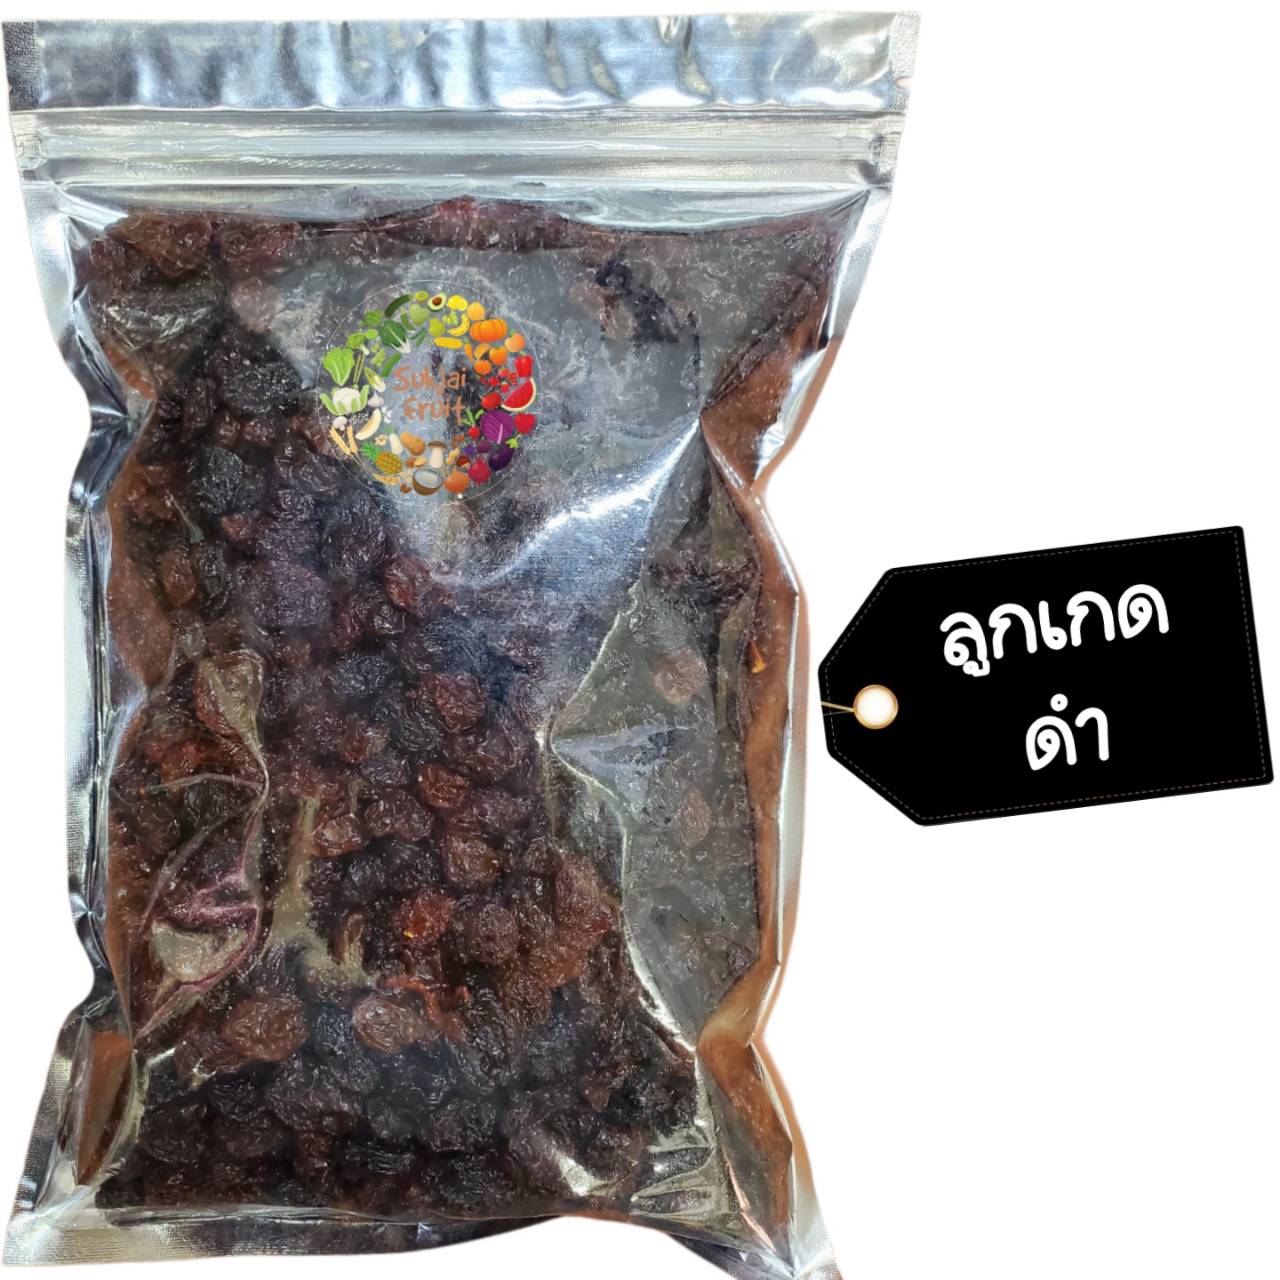 ลูกเกด ดำ 100 กรัม - Black raisins 100 g  - Dried fruit ผลไม้ อบแห้ง ขนมไทย ขนม OTOP บ๊วย ผลไม้อบแห้ง บ๊วย ผลไม้อบแห้ง